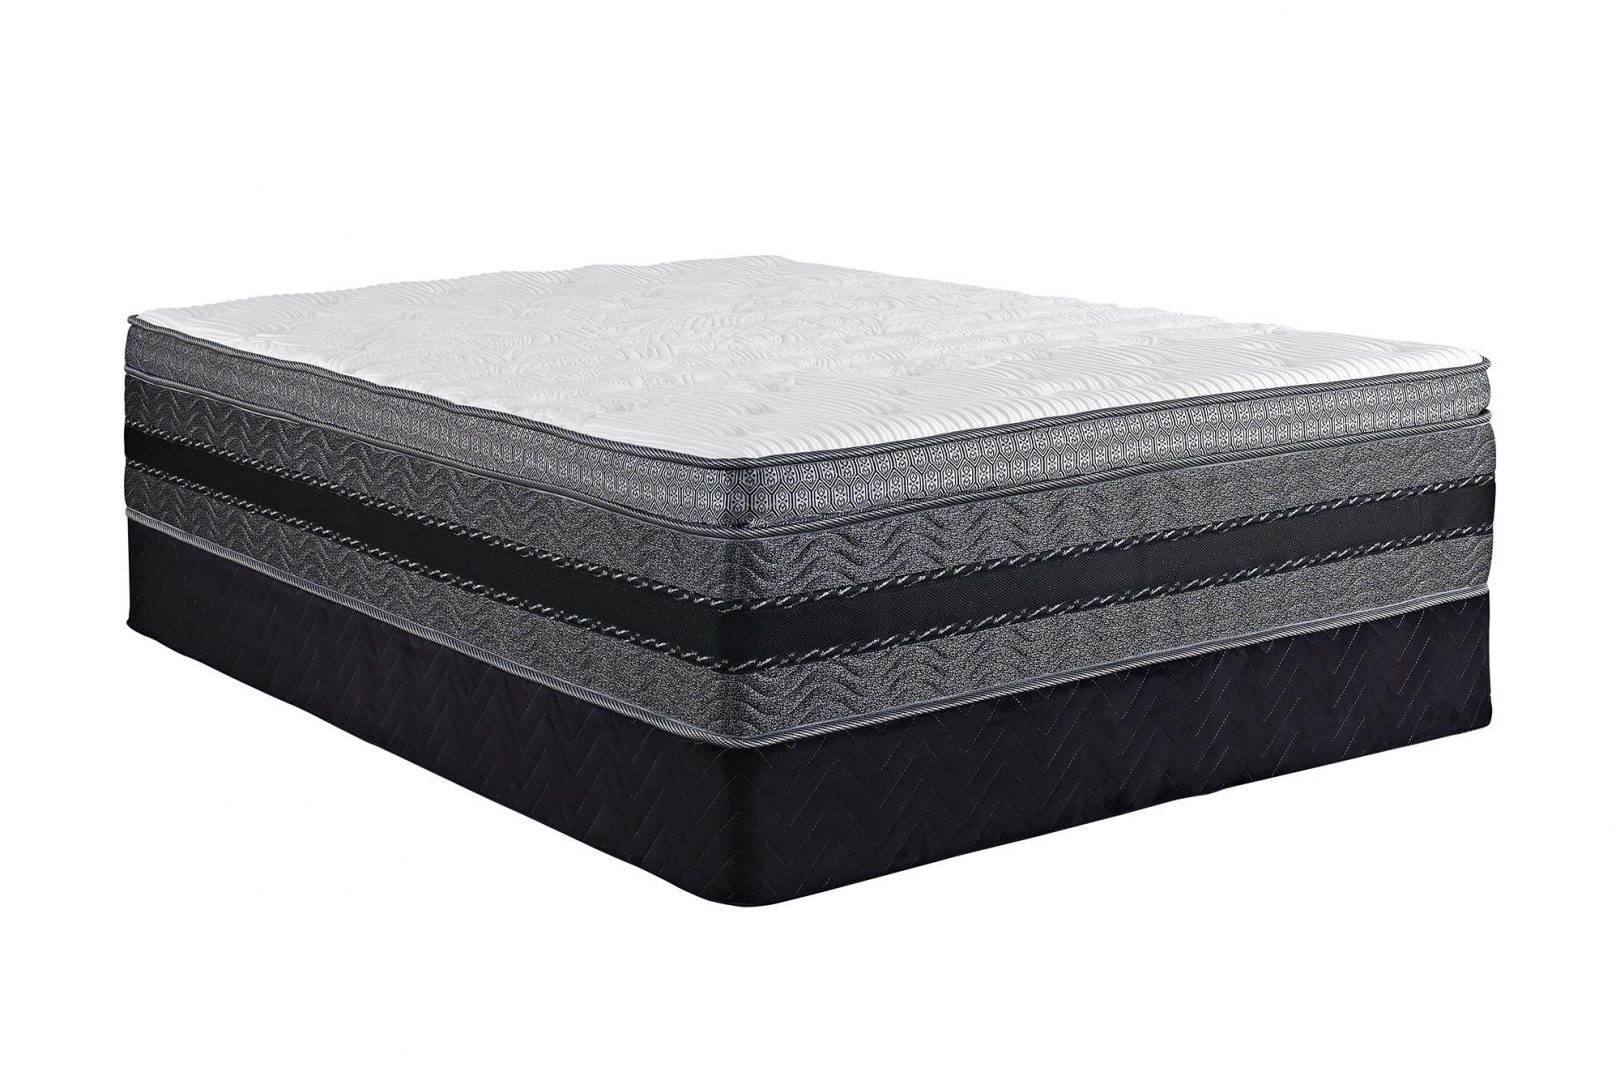 is innerspring mattress better than memory foam